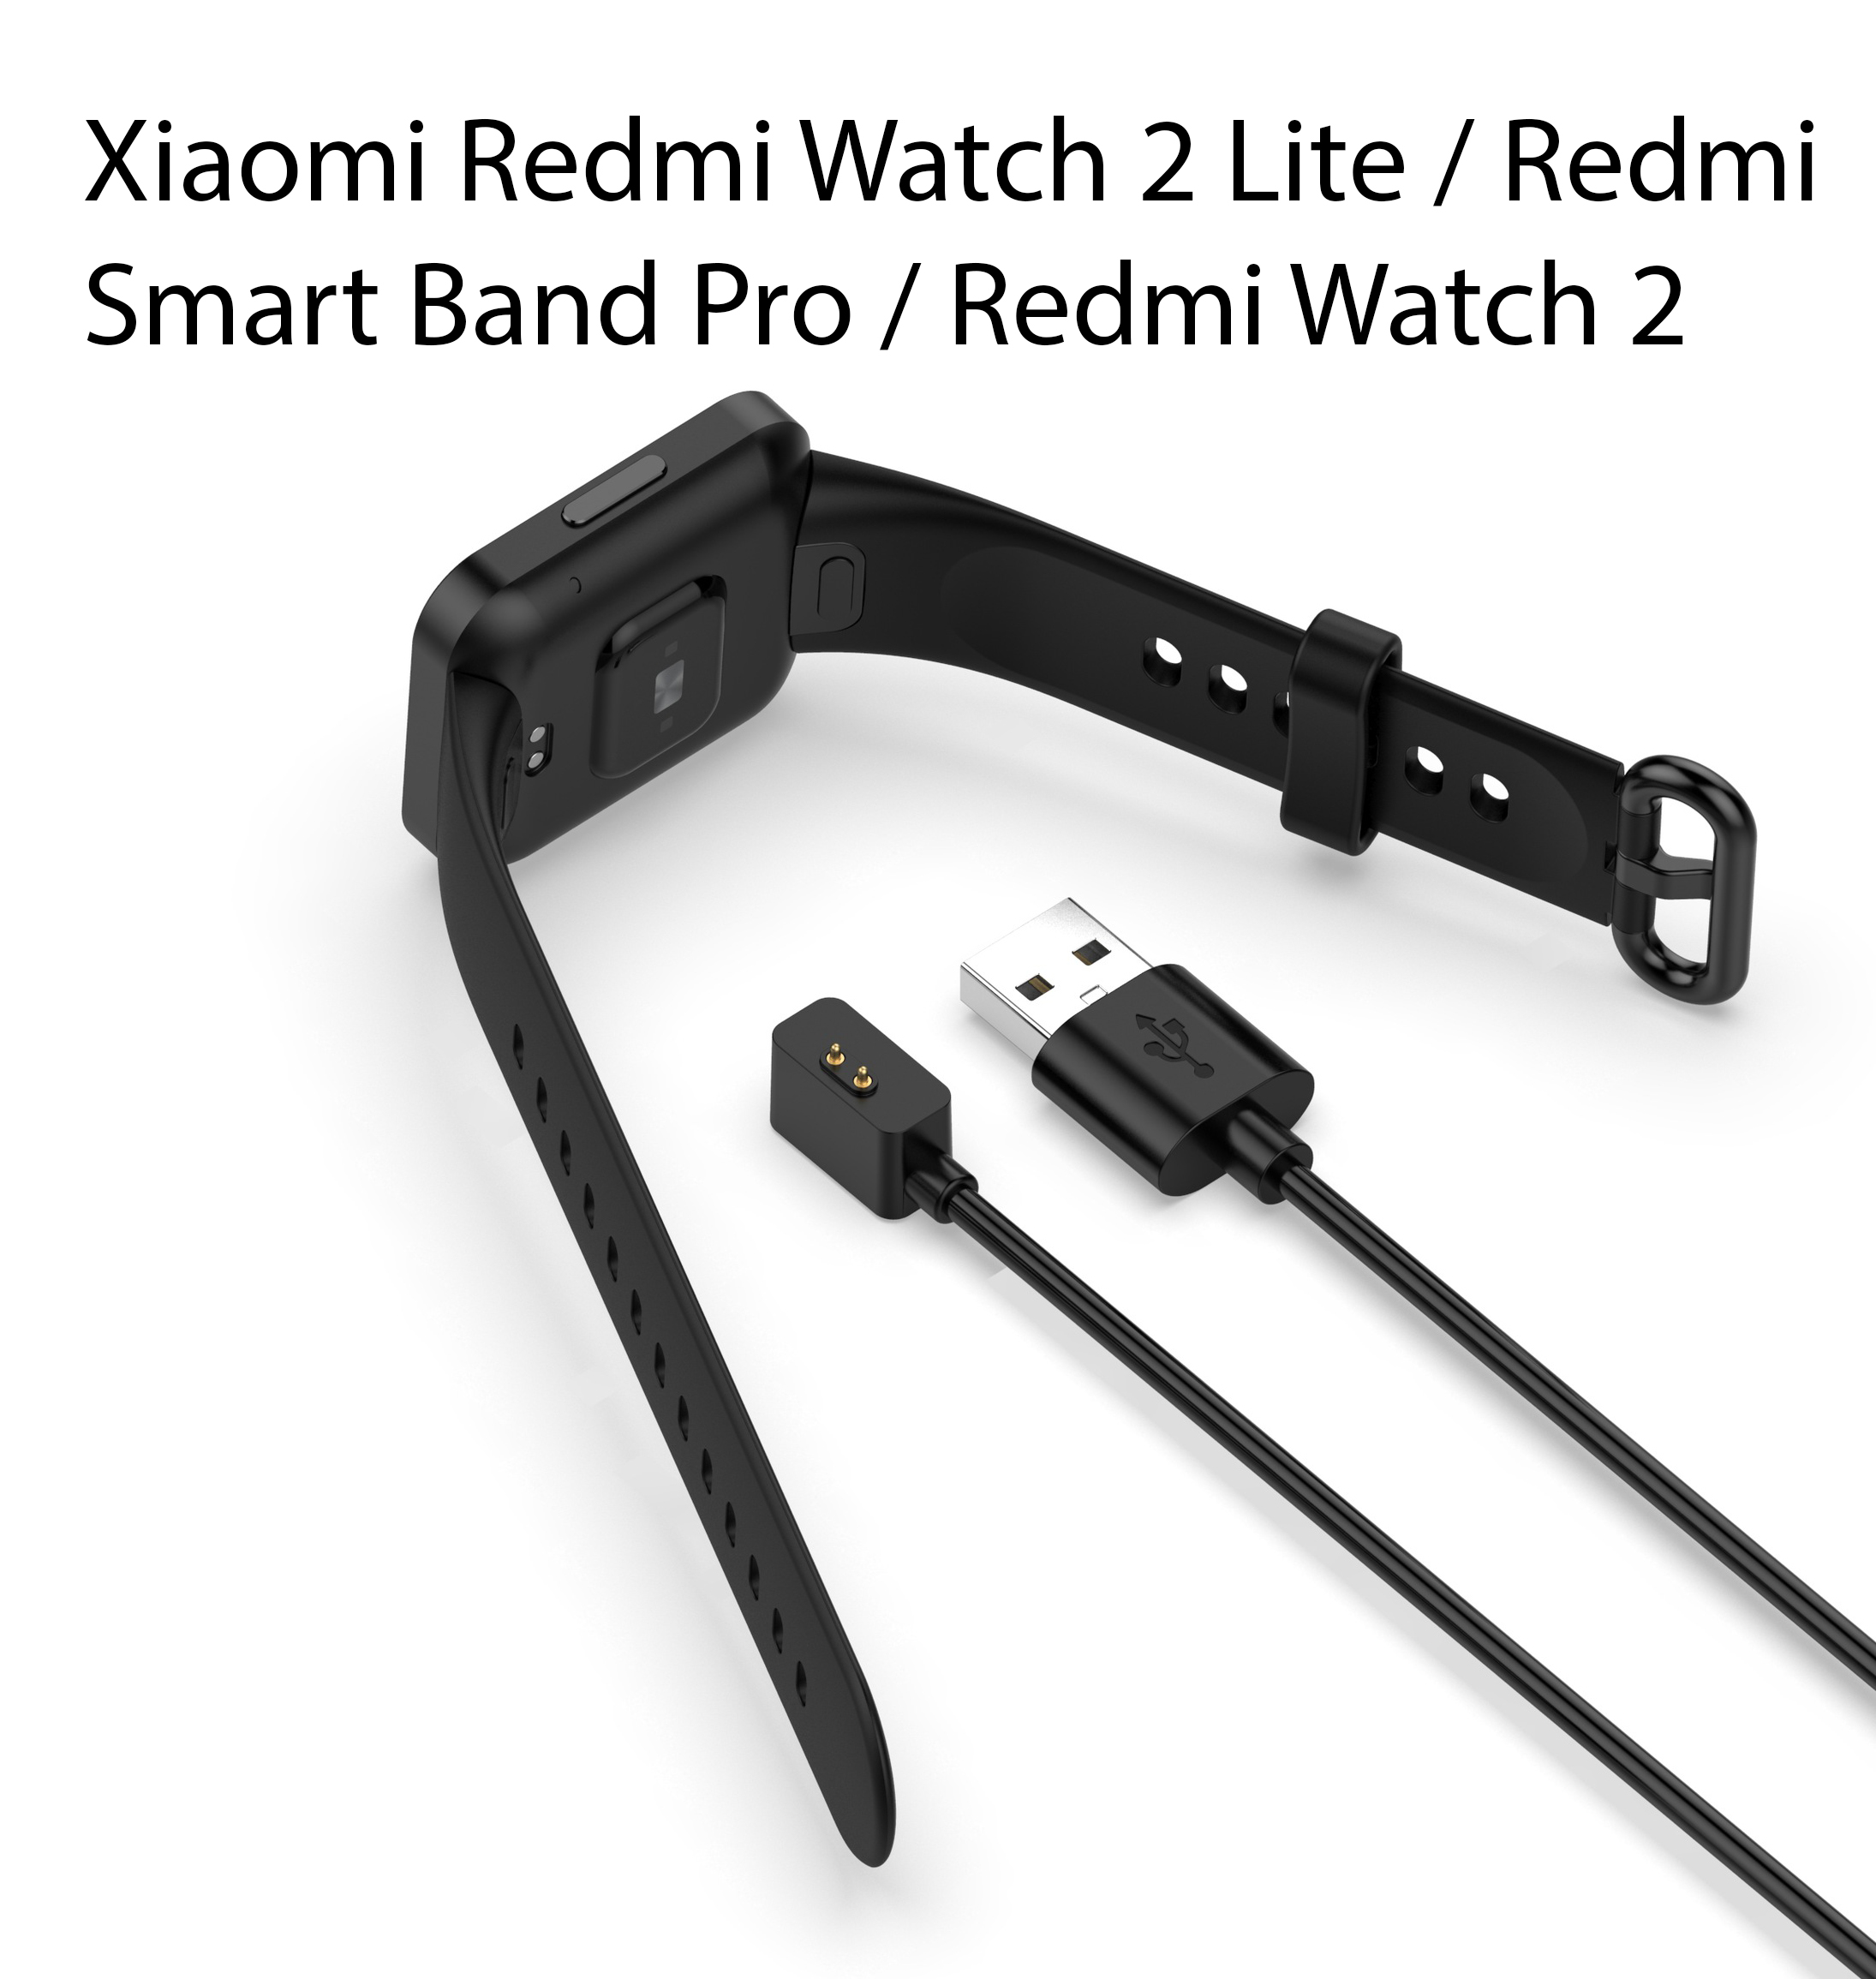 Dây Cáp Sạc Dành Cho Đồng Hồ Xiaomi Redmi Watch 2 Lite / Redmi Smart Band Pro / Redmi Watch 2 1 Mét